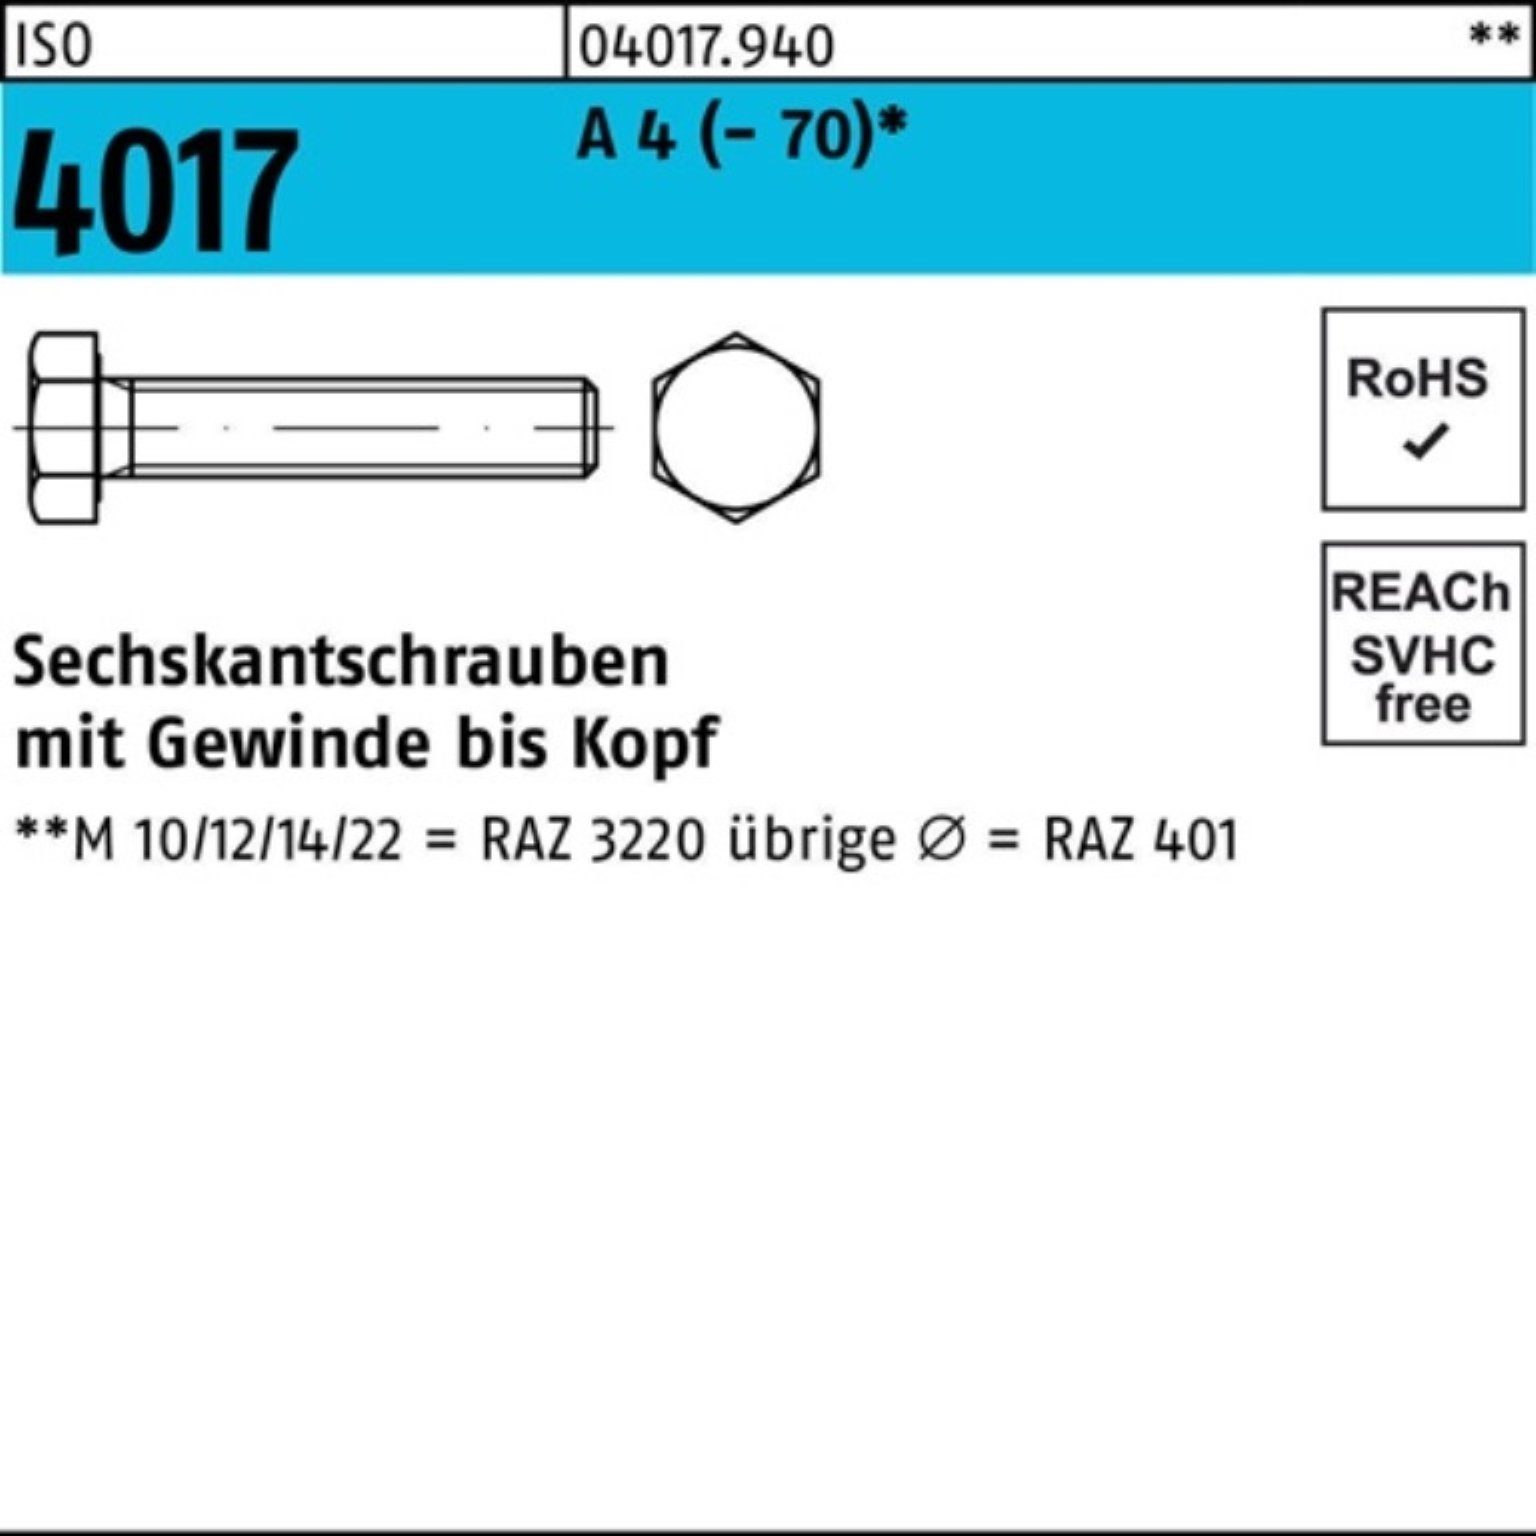 Bufab Sechskantschraube 100er Pack Sechskantschraube ISO 4017 VG M6x 12 A 4 (70) 100 Stück